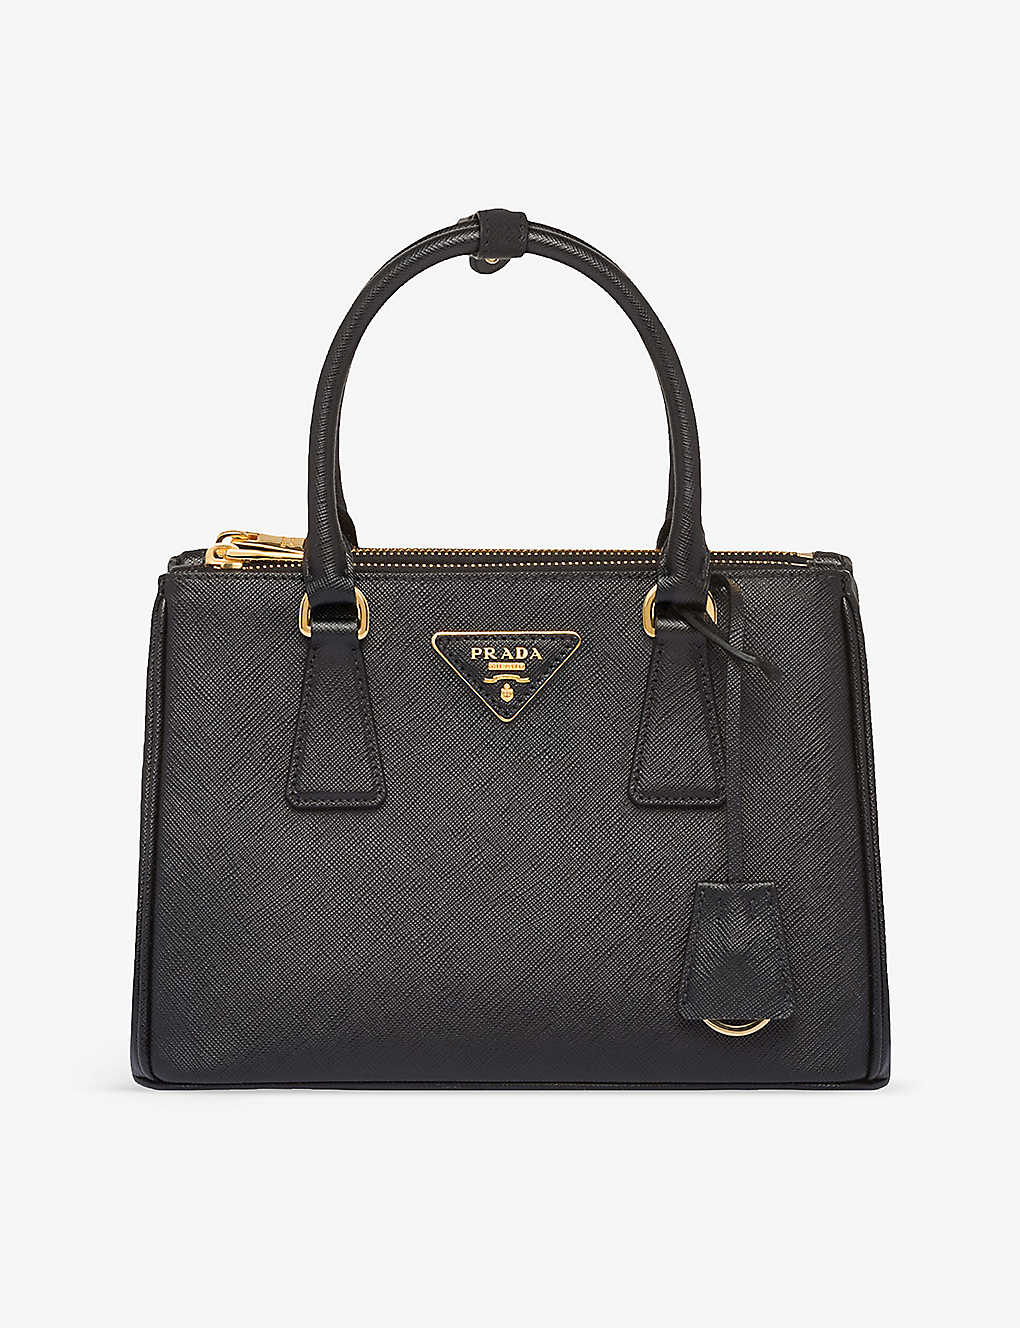 Prada Black Galleria Small Saffiano-leather Tote Bag